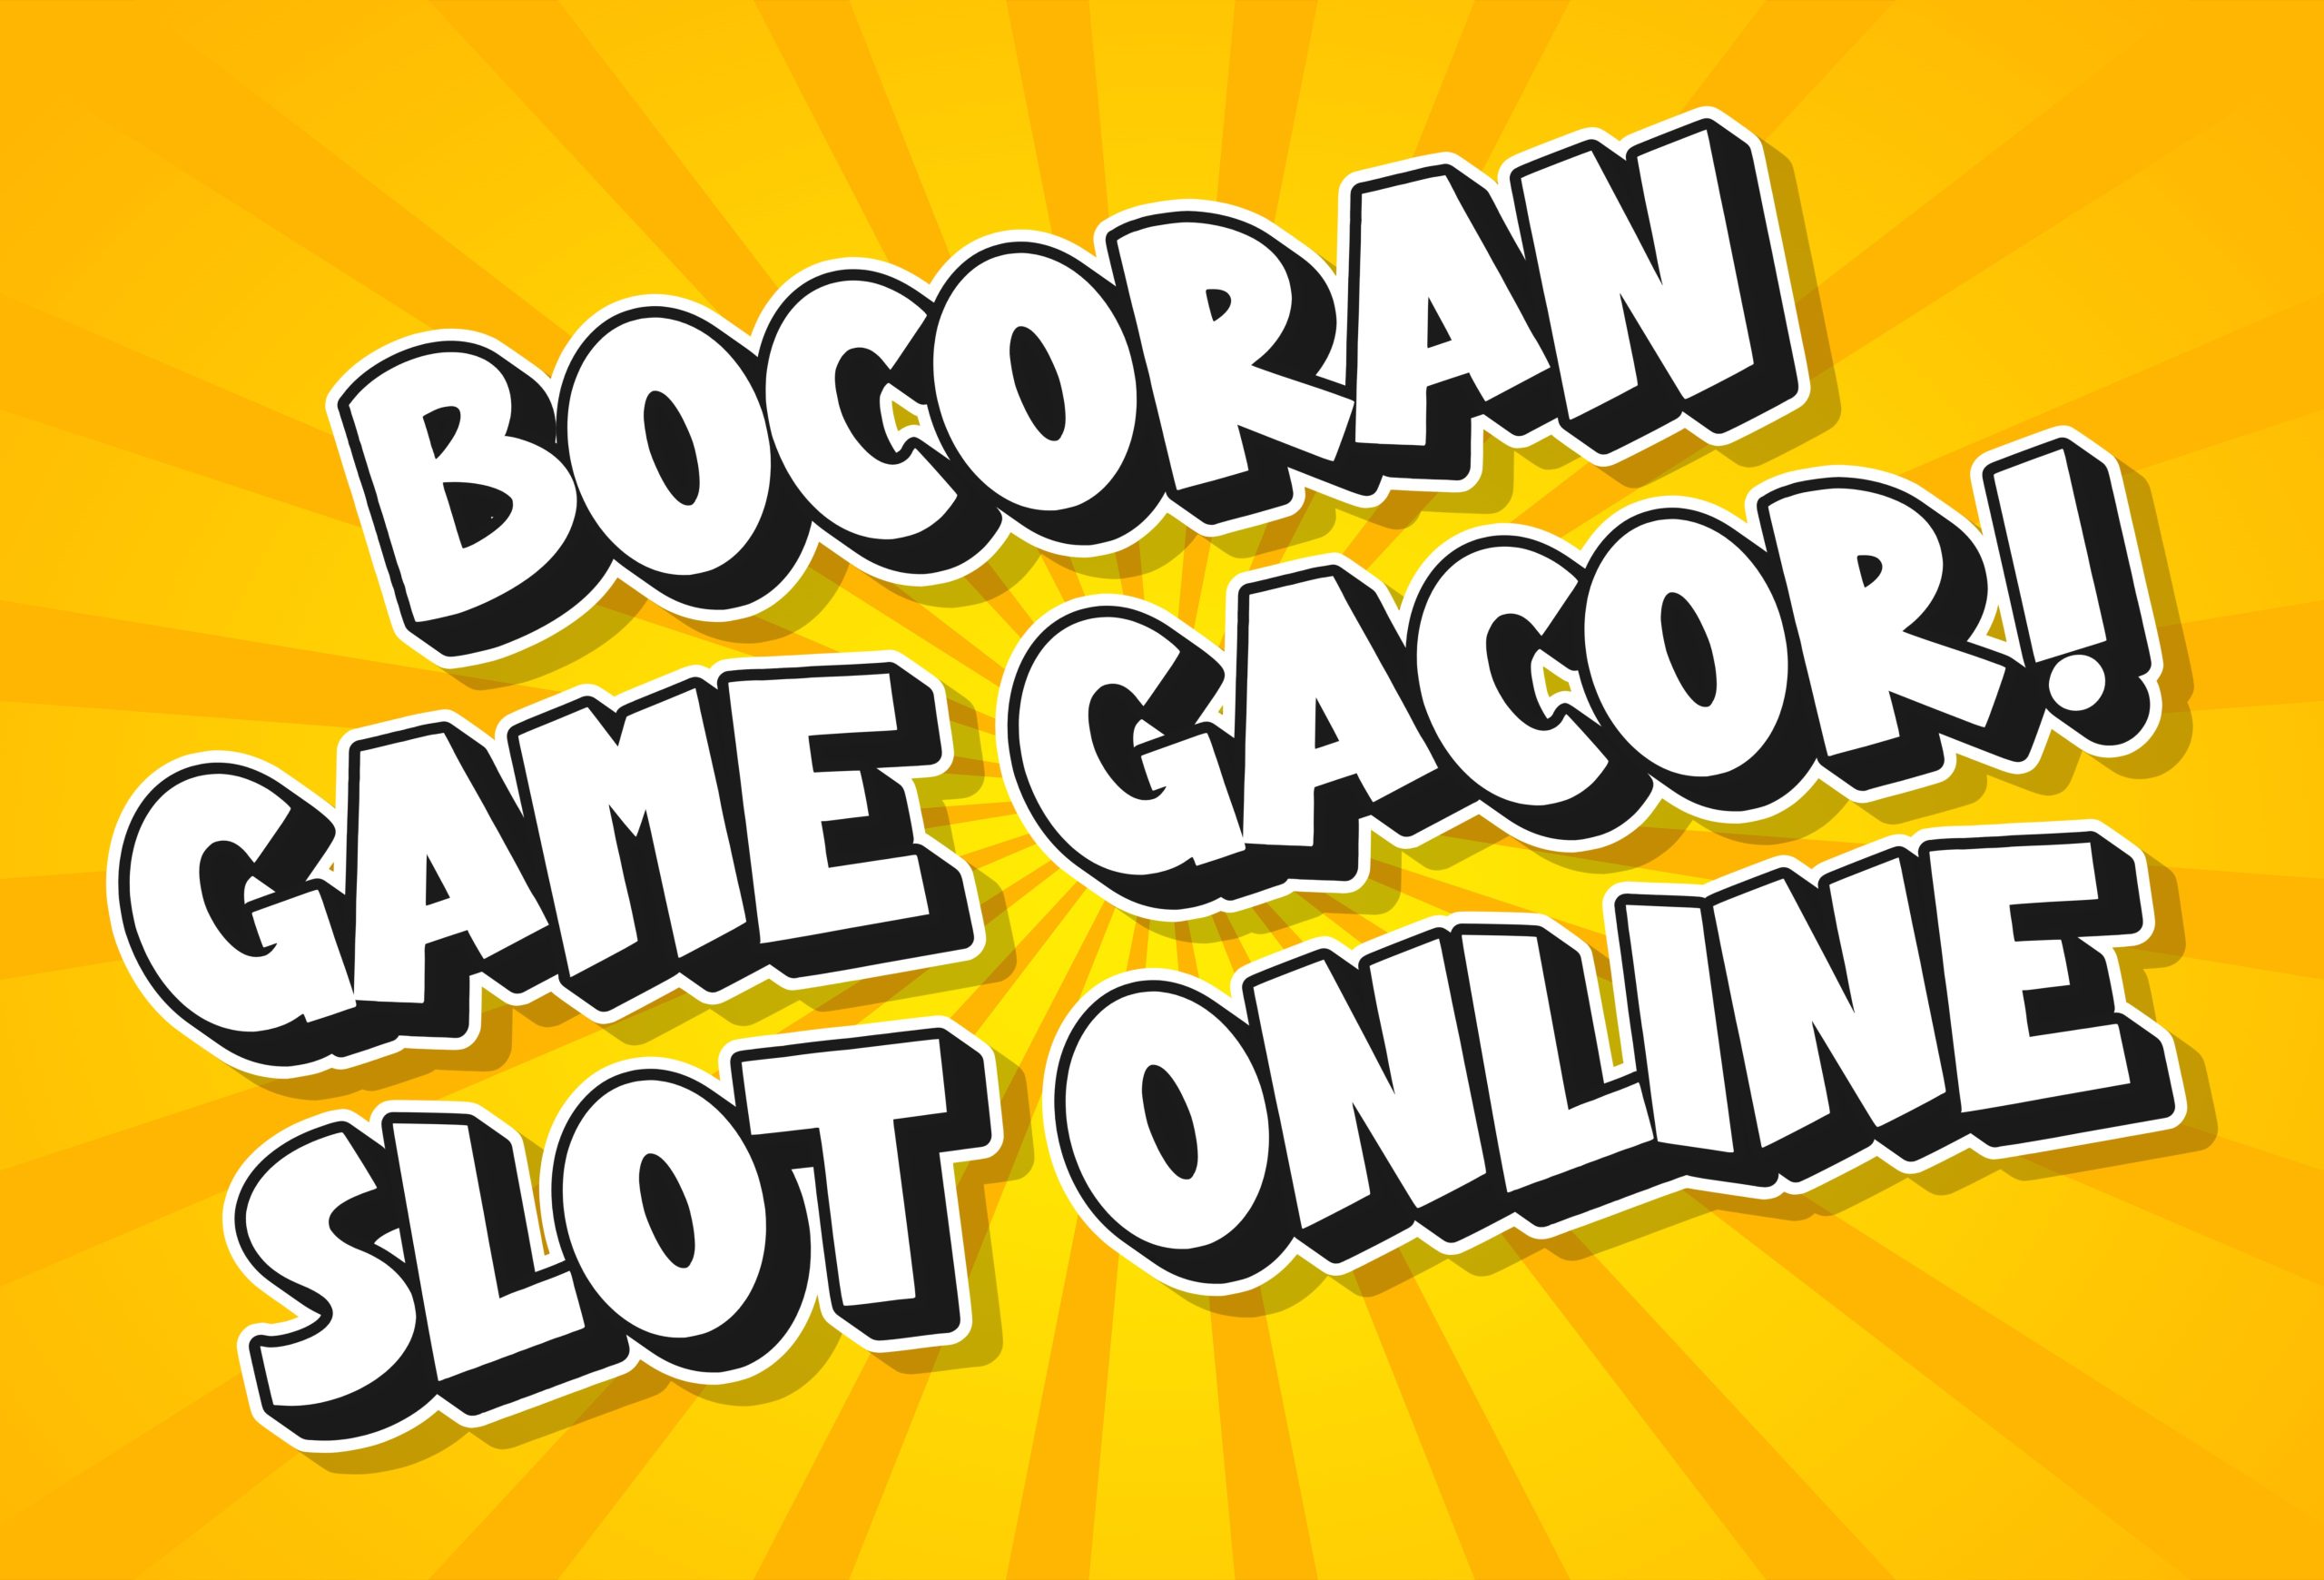 Bocoran Game Slot Online